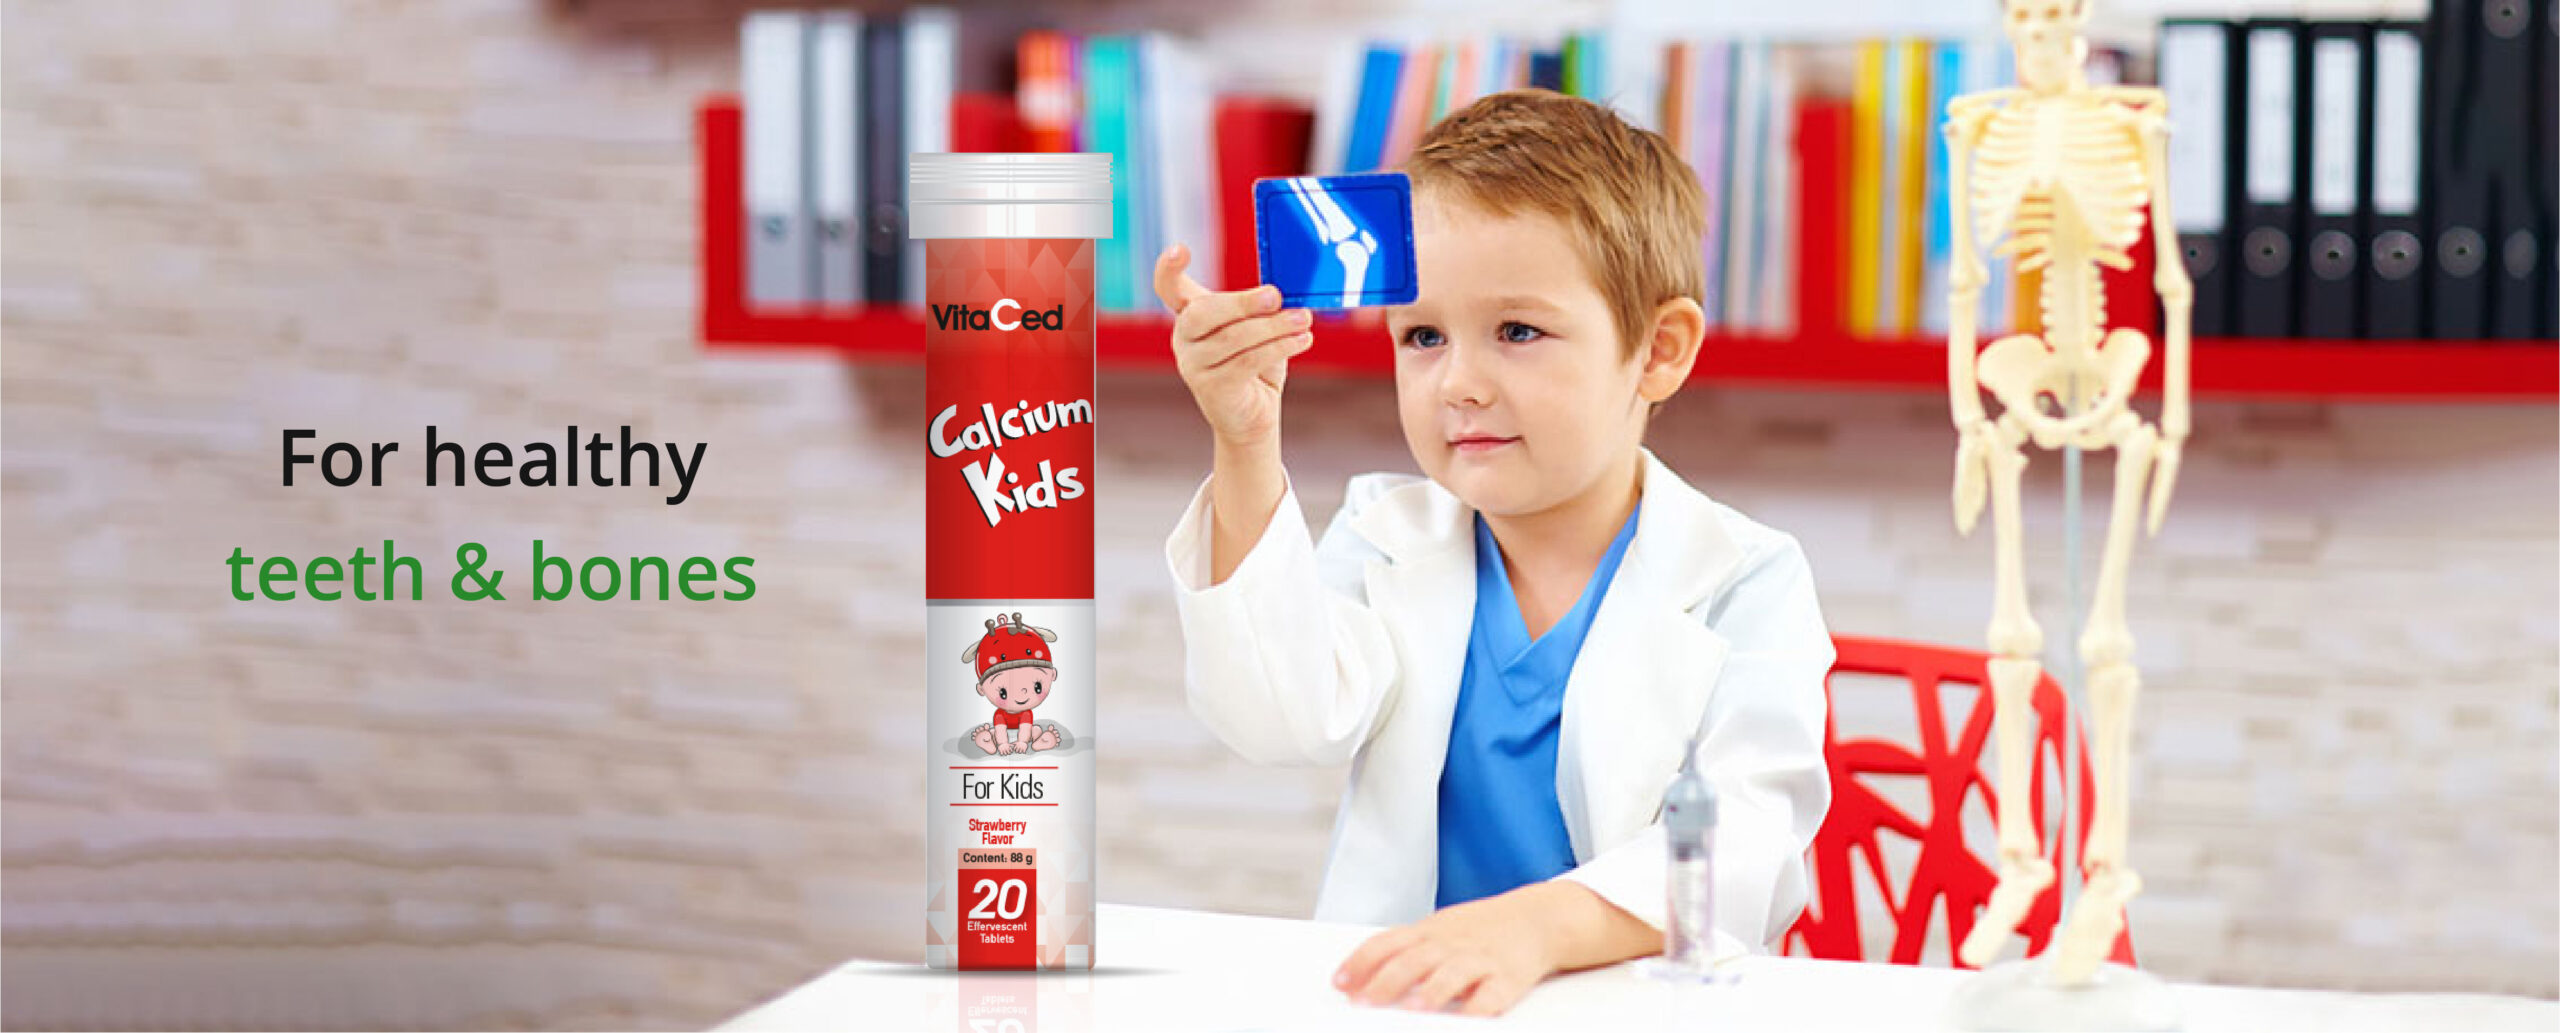 Oman Online Shop Banner Calcium Kids